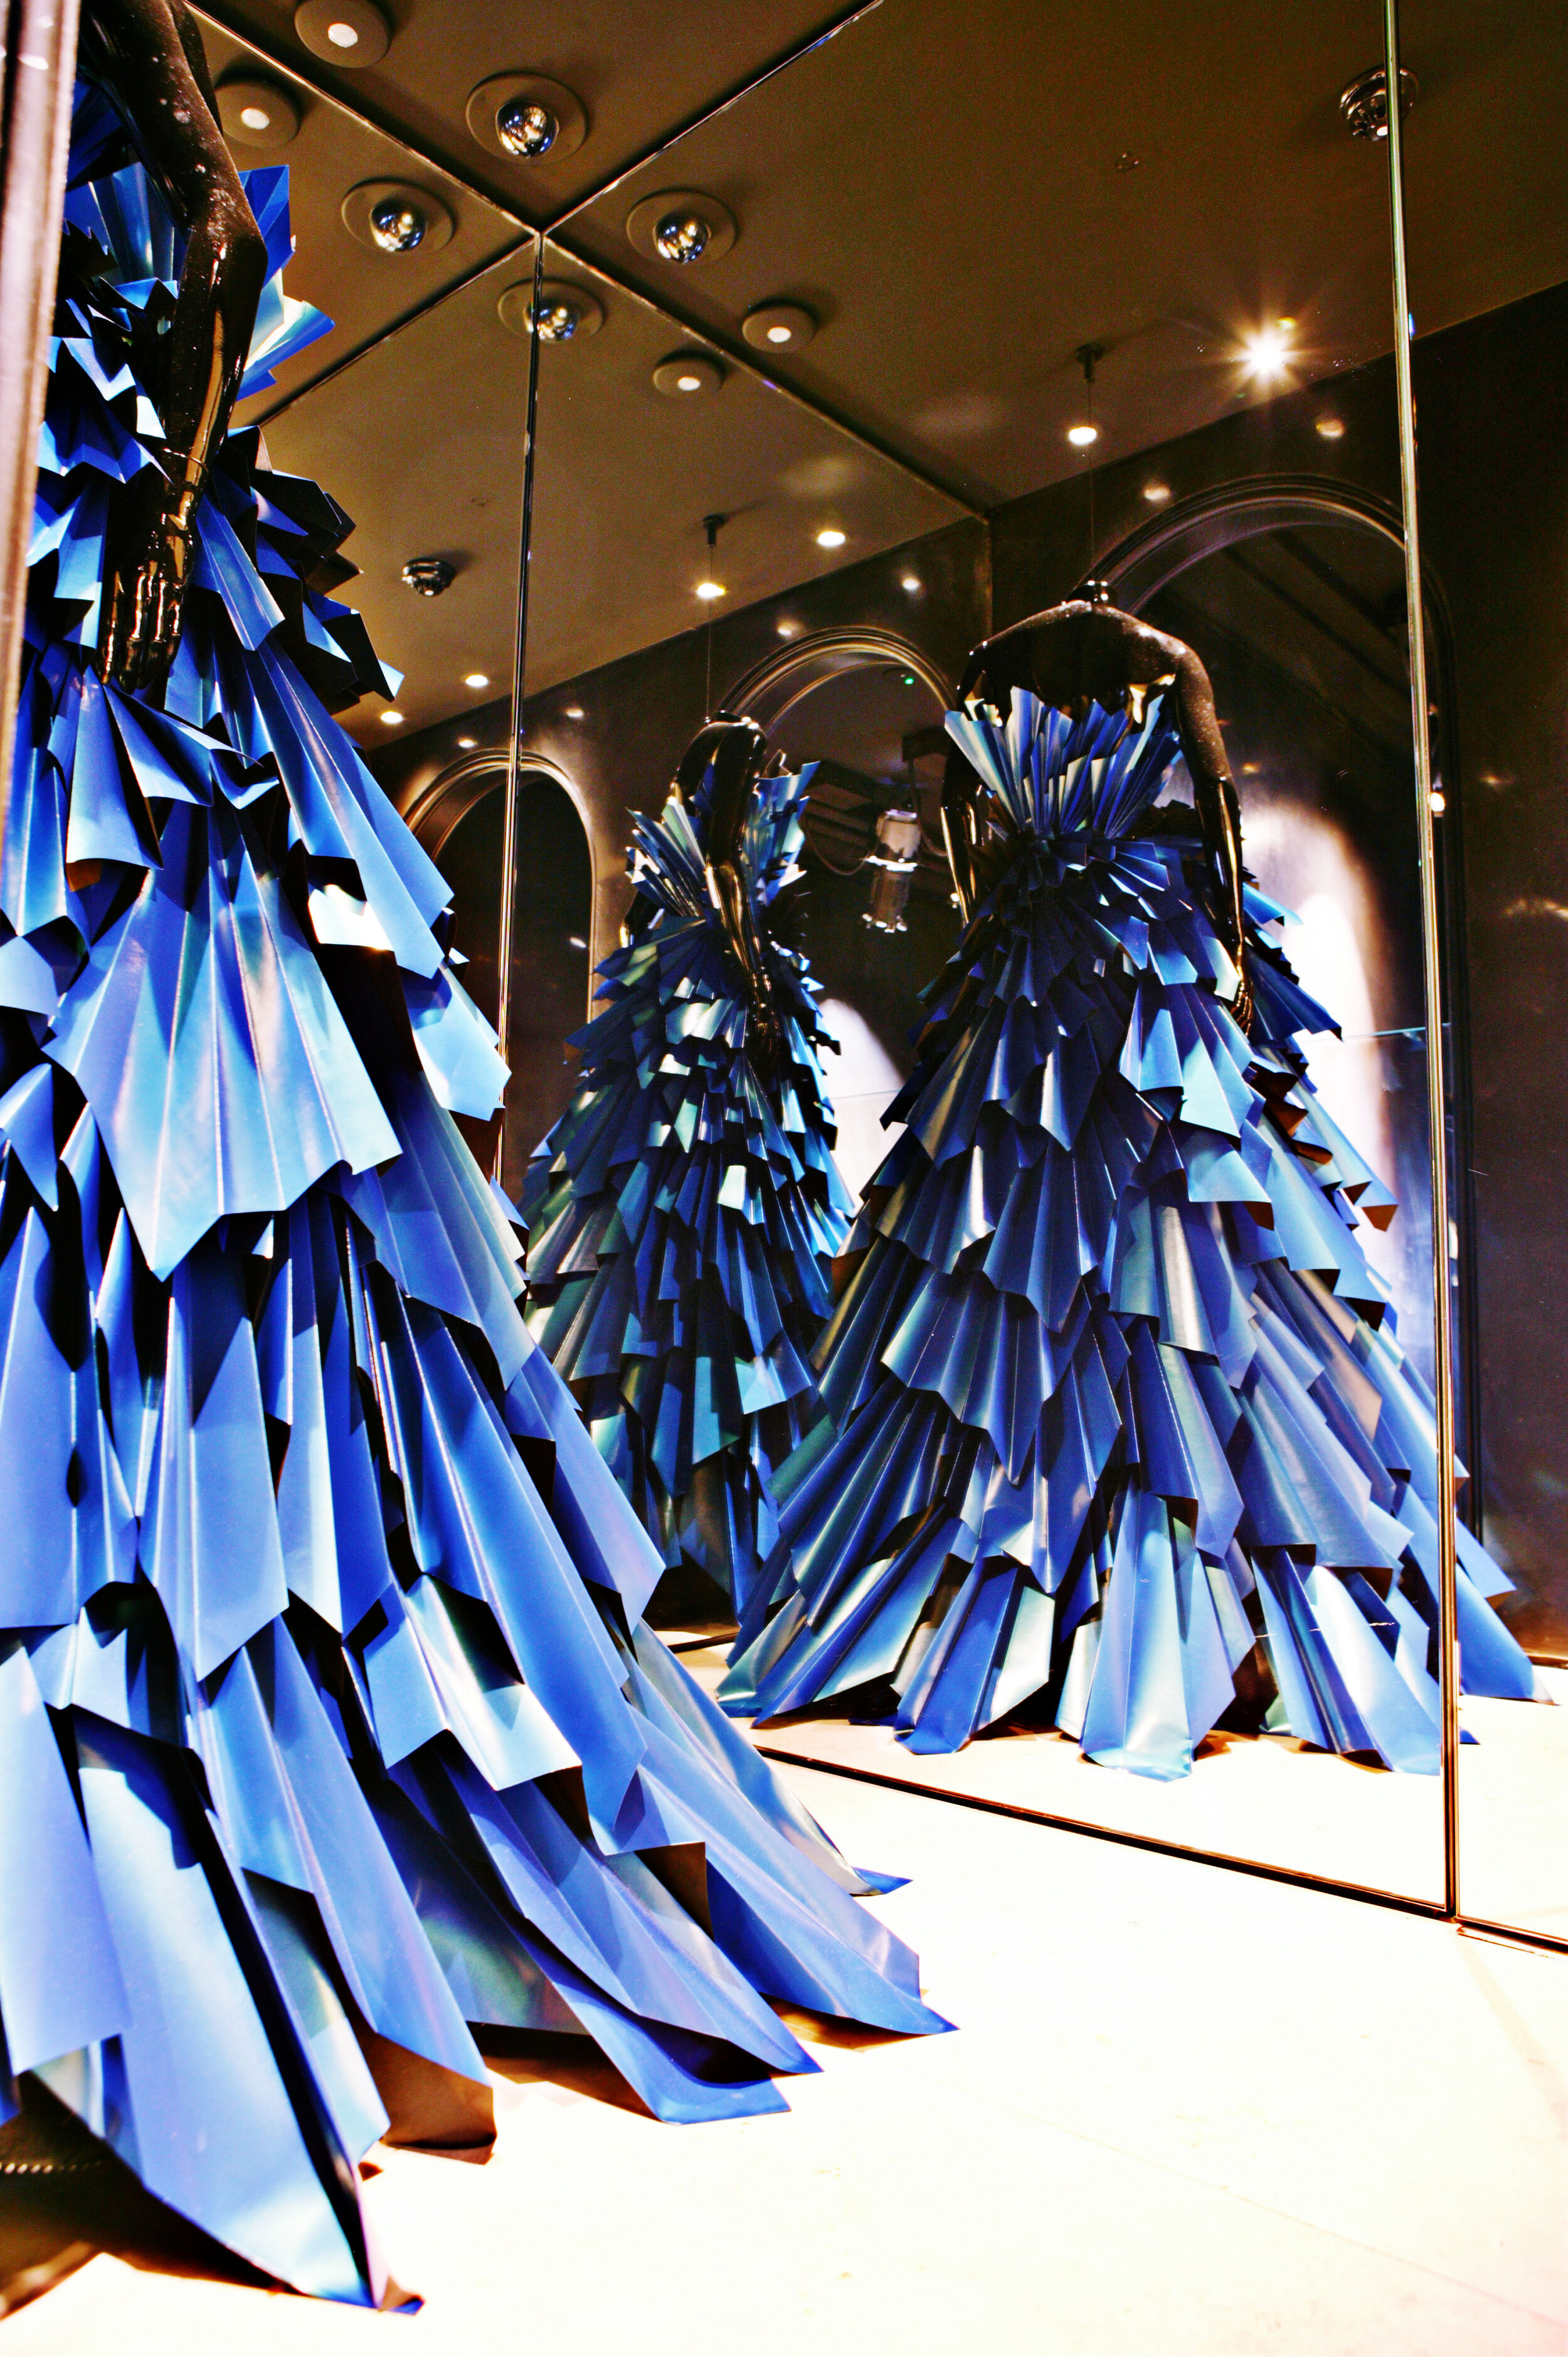 donna-karen-paper-dress-window-display-zoe-bradley-paper-art-1.jpg